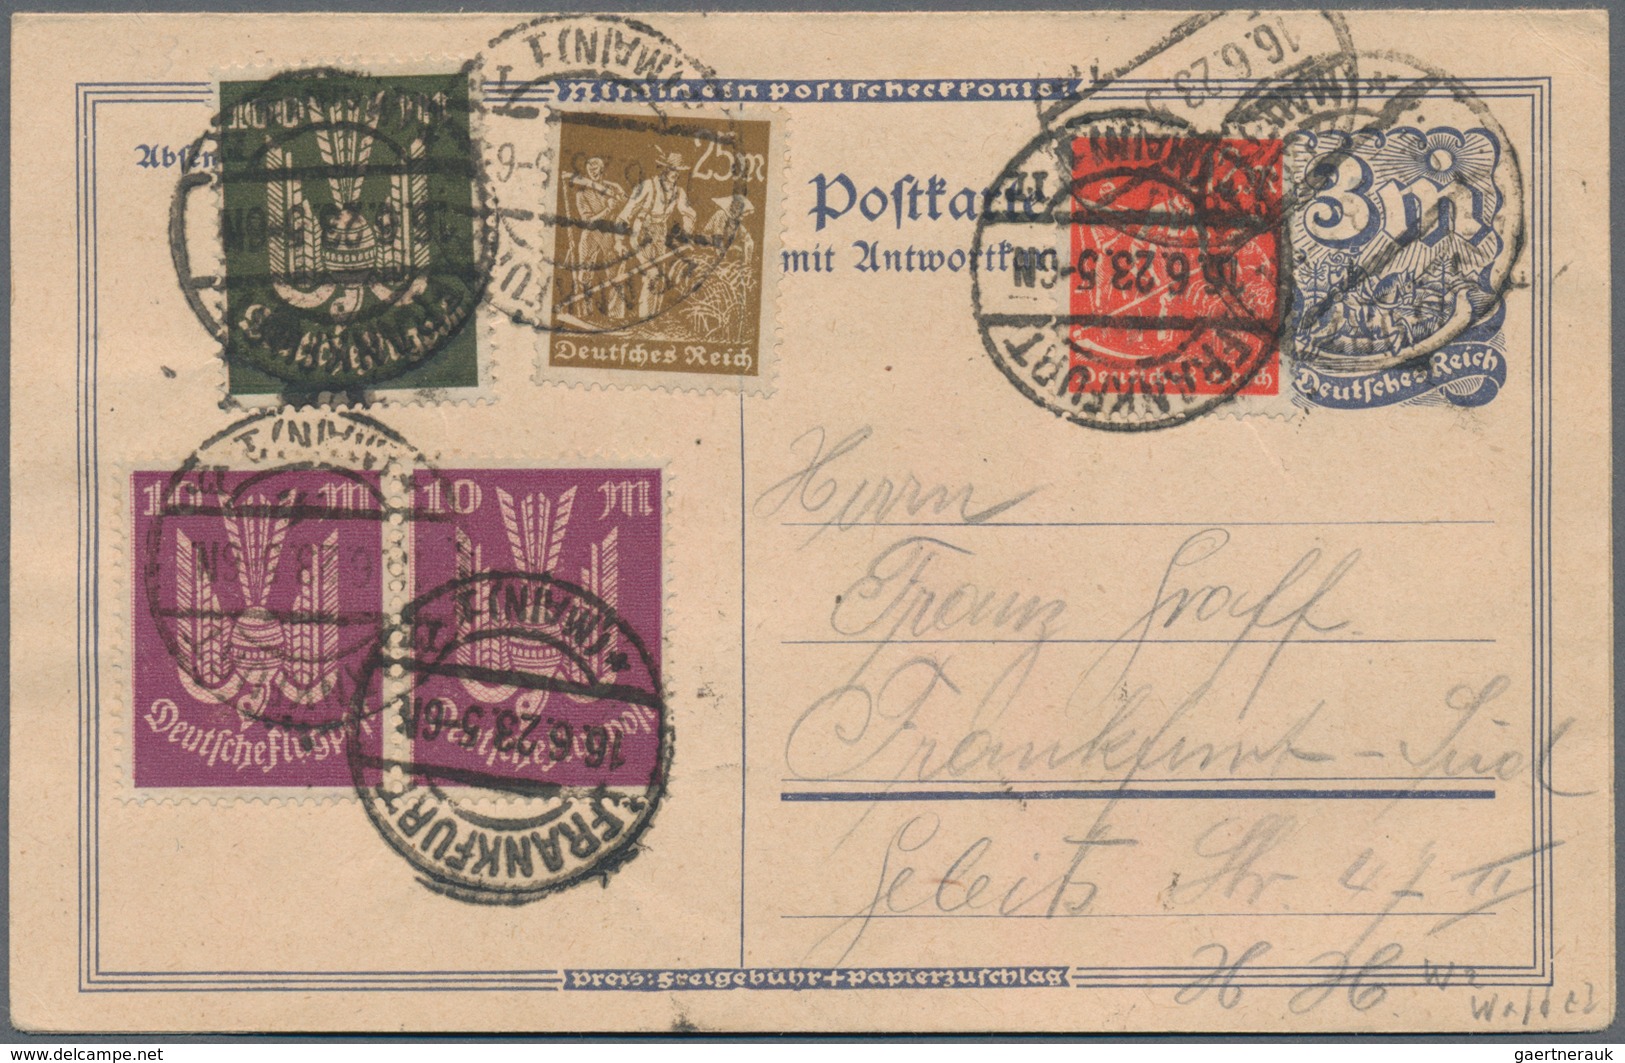 Deutsches Reich - Inflation: 1919/1923, vielseitige Partie von ca. 400 Briefen, Karten und gebraucht